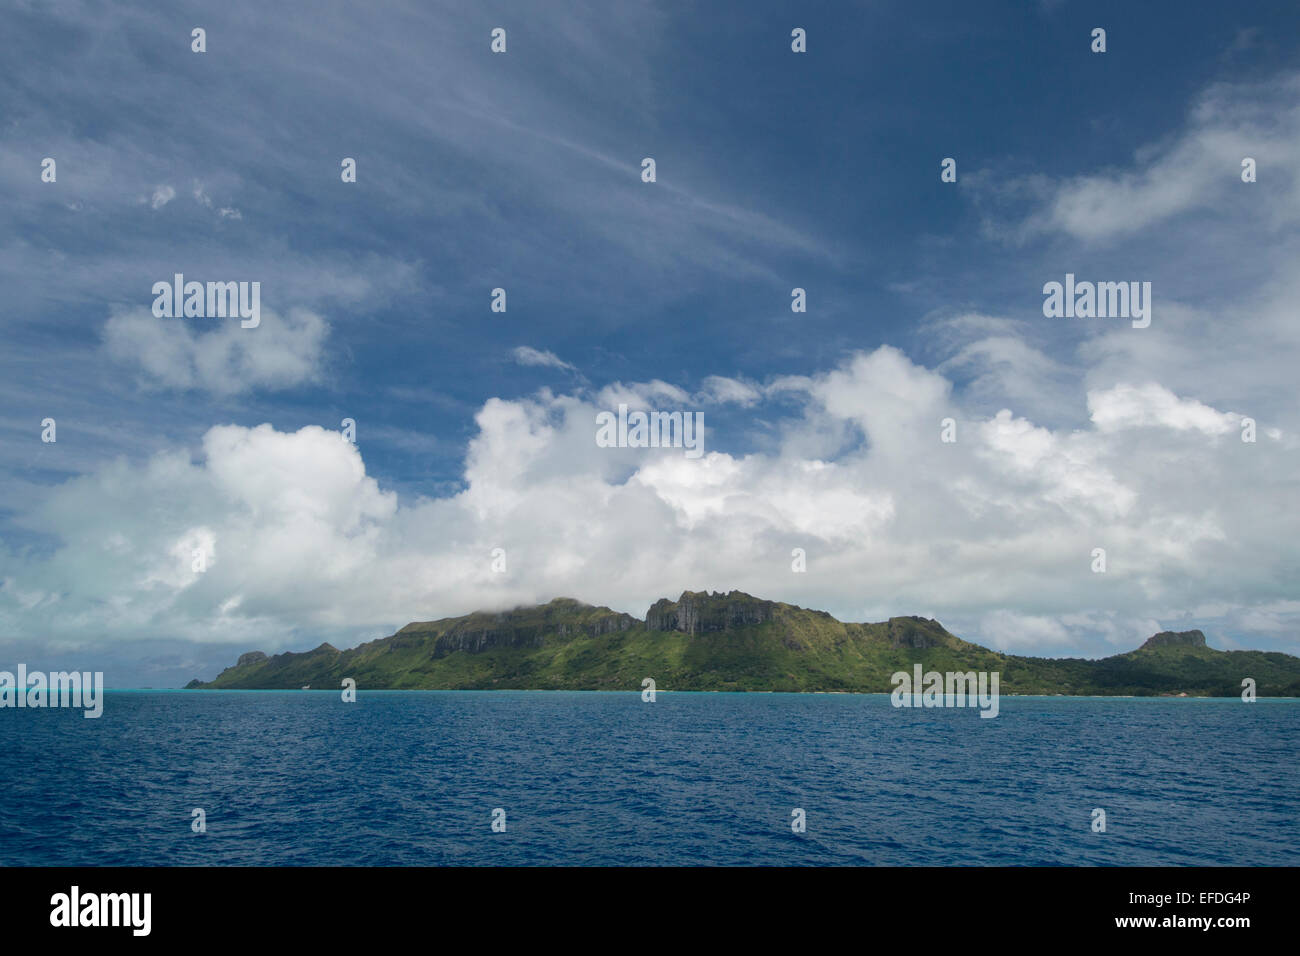 Französisch-Polynesien, Austral-Inseln Raivavae. Pazifik-Blick auf die abgelegenen vulkanischen Insel Raivavae. Stockfoto